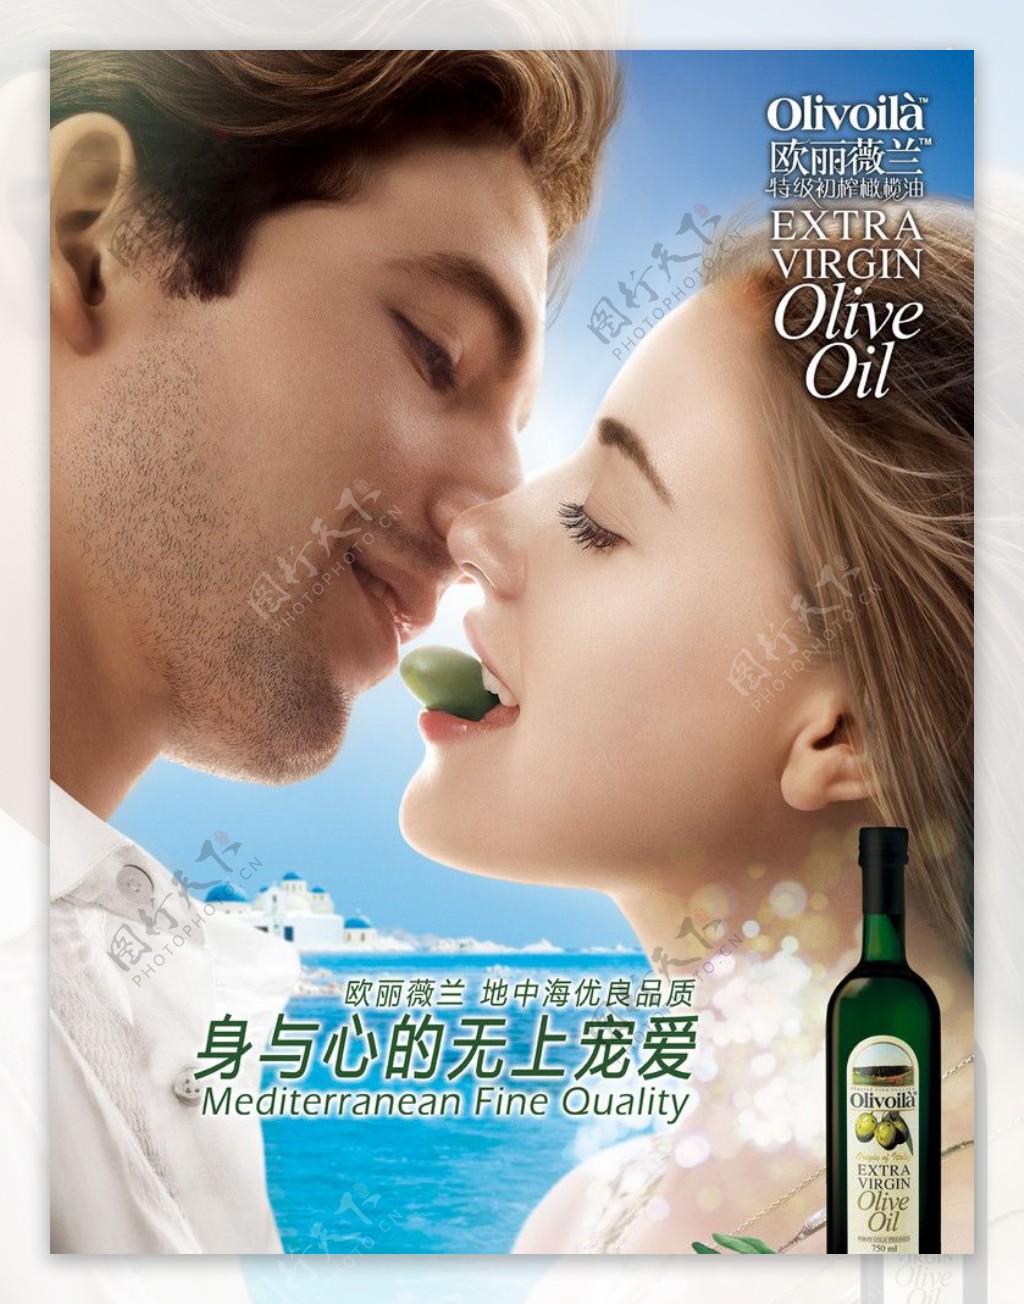 欧丽薇兰橄榄油2010年新版poster图片